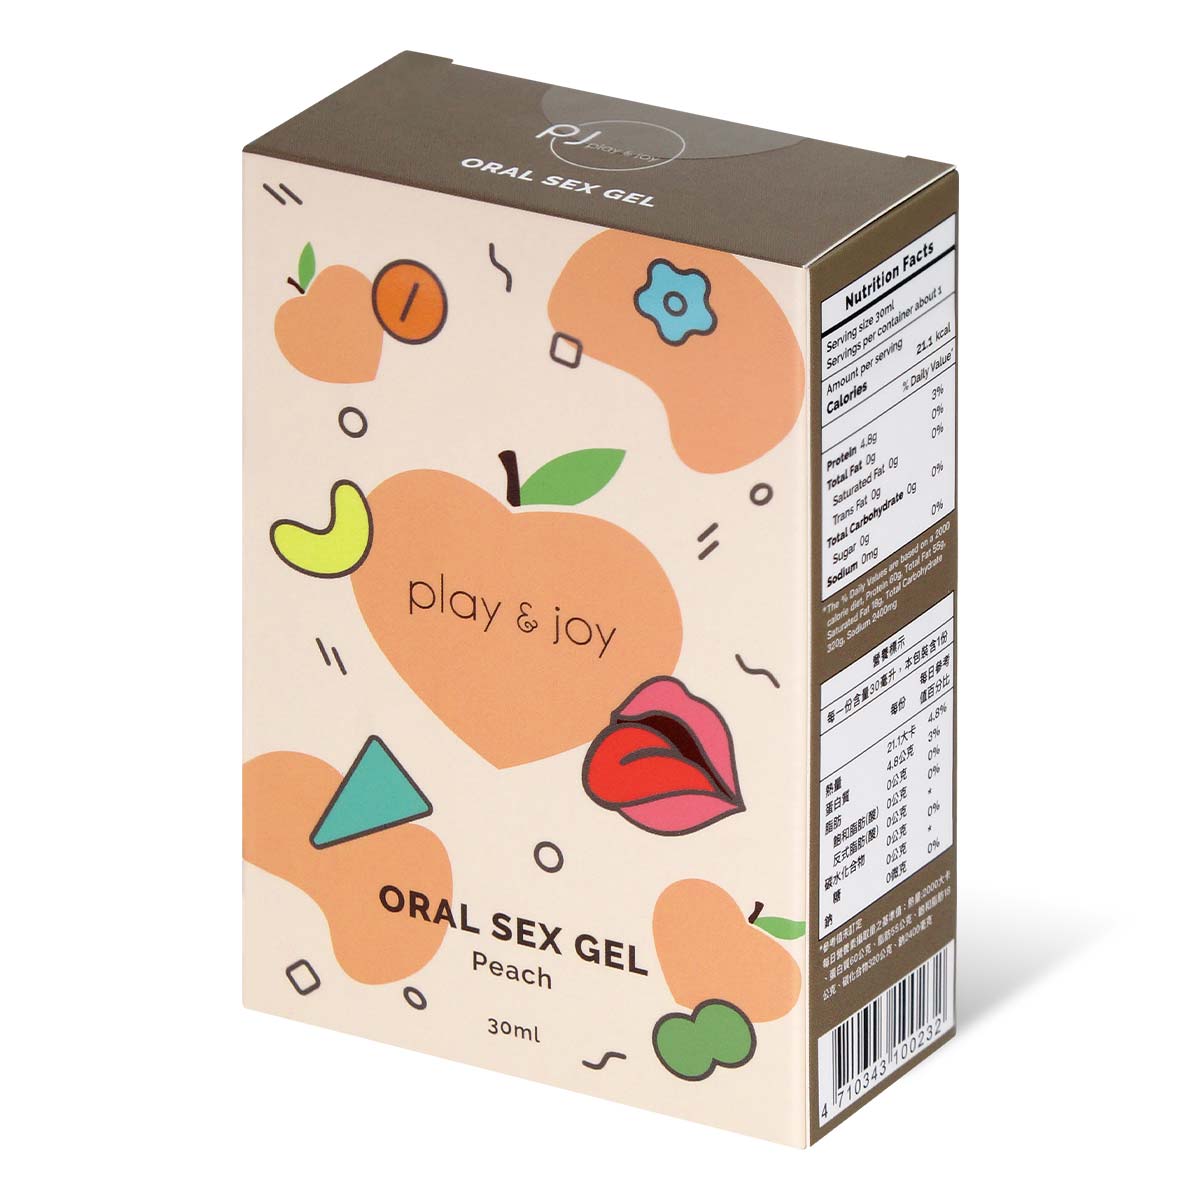 PLAY & JOY ORAL SEX GEL 30ml (Peach Flavour)-thumb_1